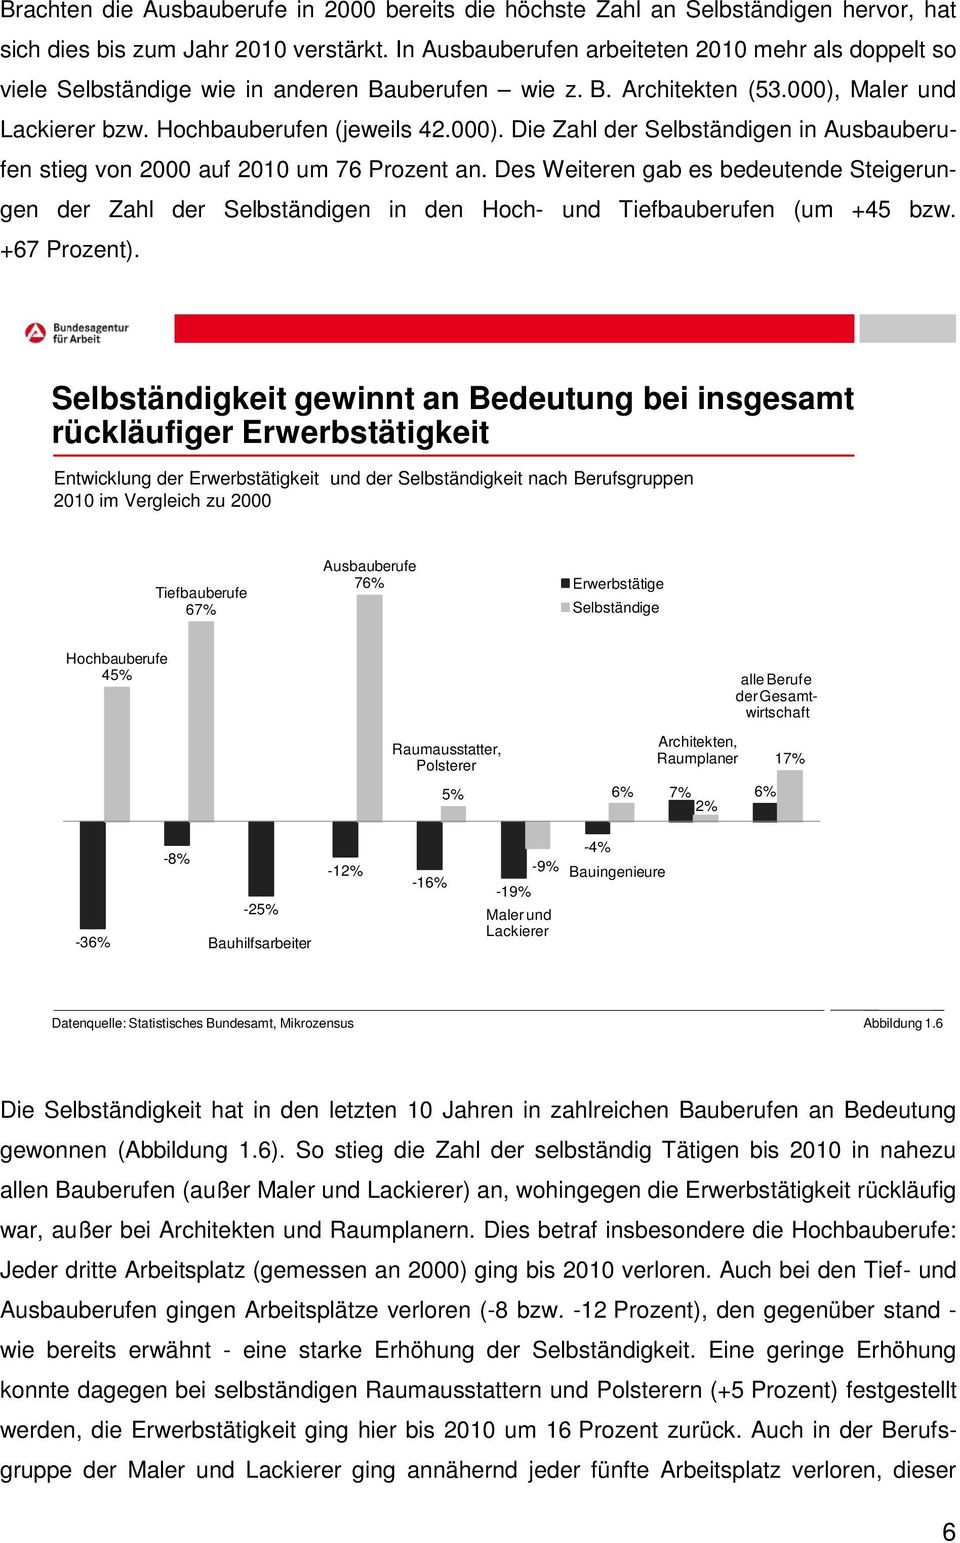 Maler und Lackierer bzw. Hochbauberufen (jeweils 42.000). Die Zahl der Selbständigen in Ausbauberufen stieg von 2000 auf 2010 um 76 Prozent an.